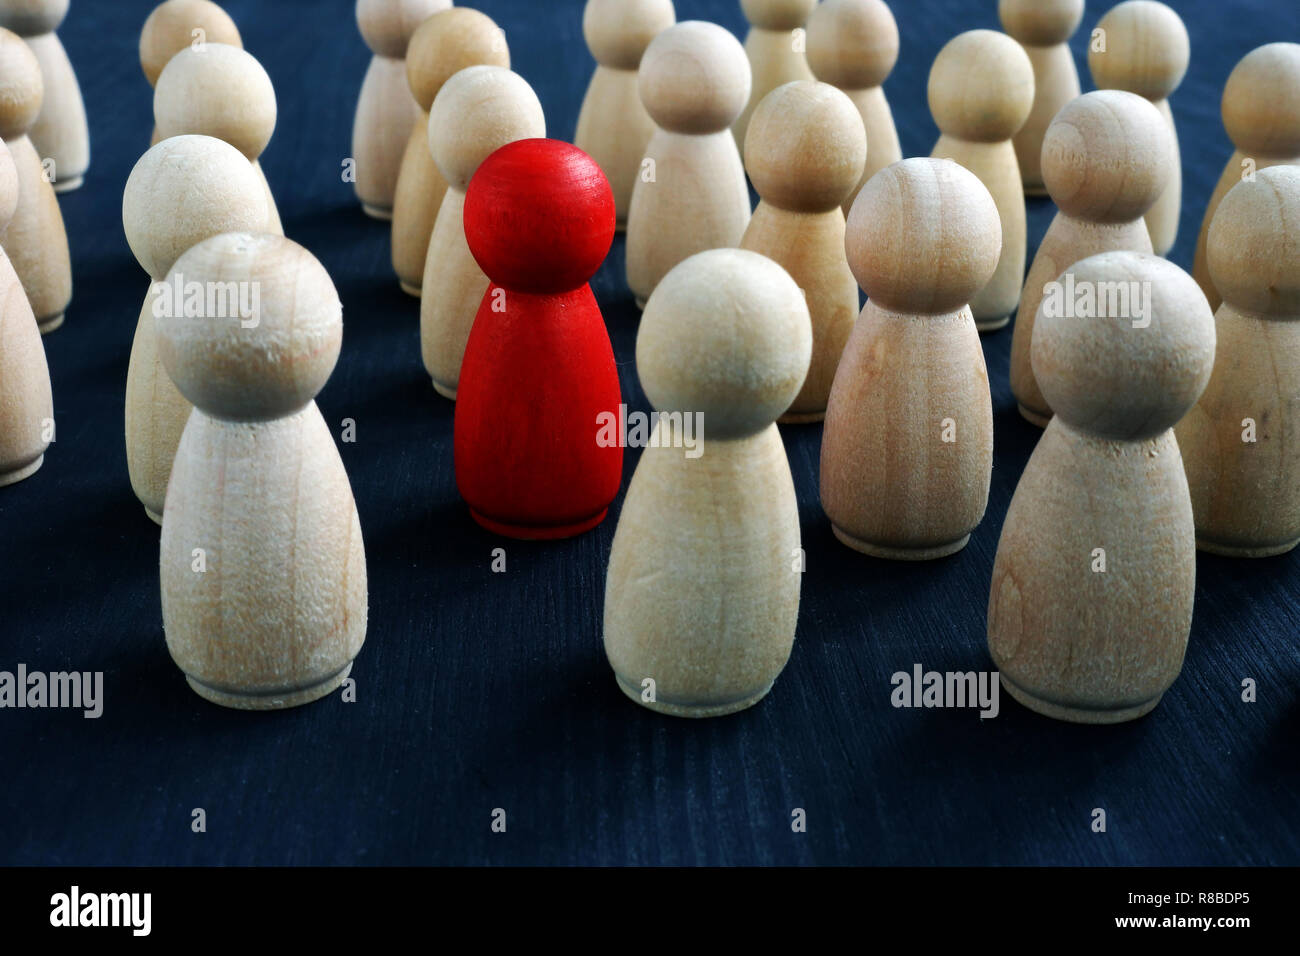 Individualità, personalità e originalità del concetto. In legno rosso figura nella folla. Foto Stock